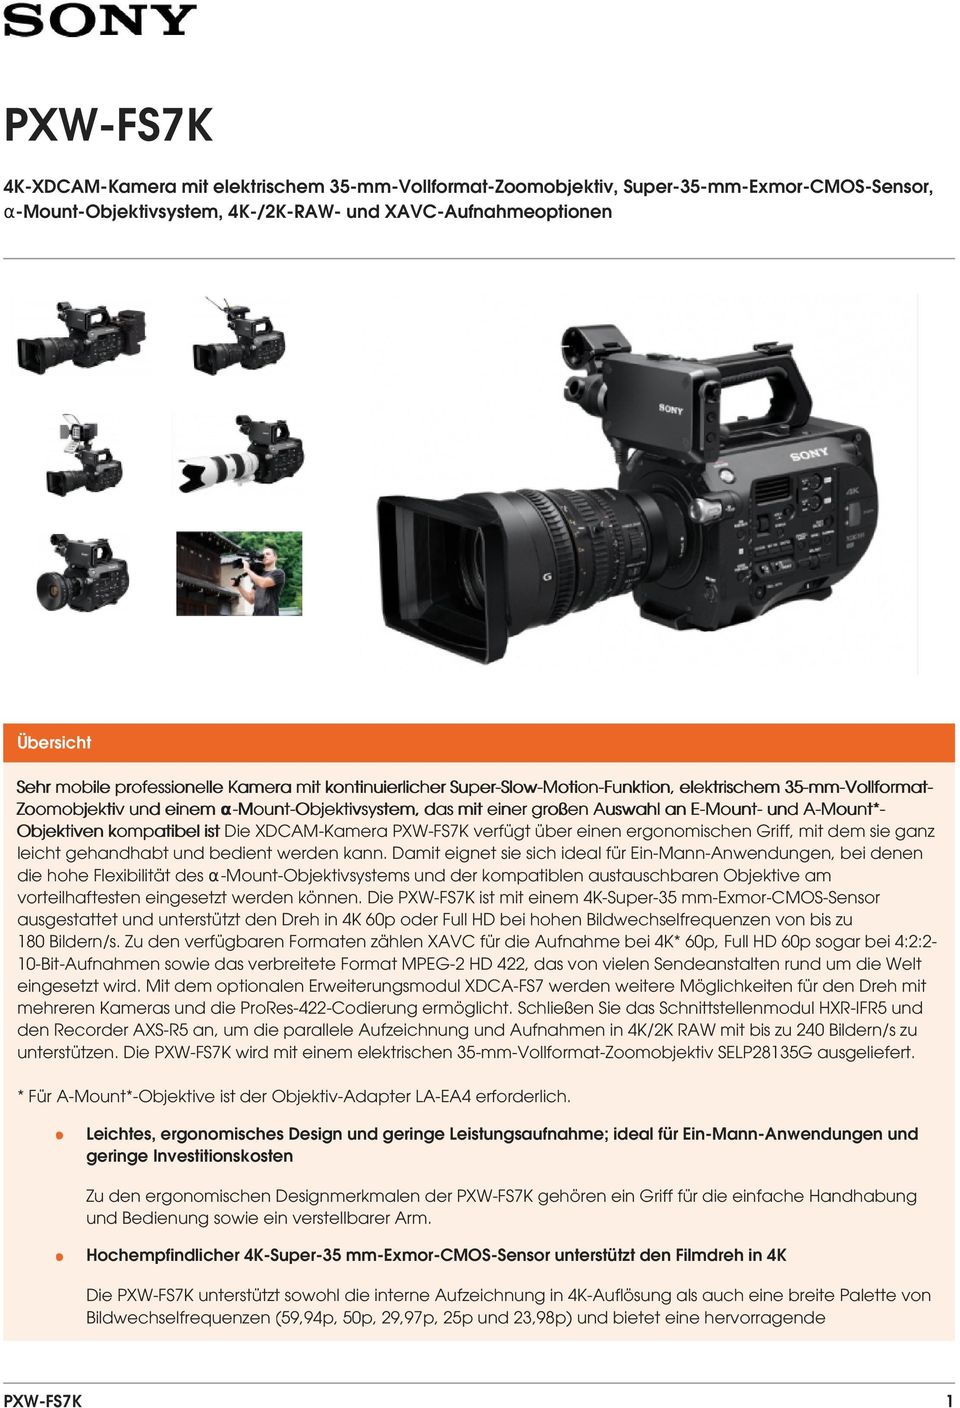 A-Mount*- Objektiven kompatibel ist Die XDCAM-Kamera PXW-FS7K verfügt über einen ergonomischen Griff, mit dem sie ganz leicht gehandhabt und bedient werden kann.